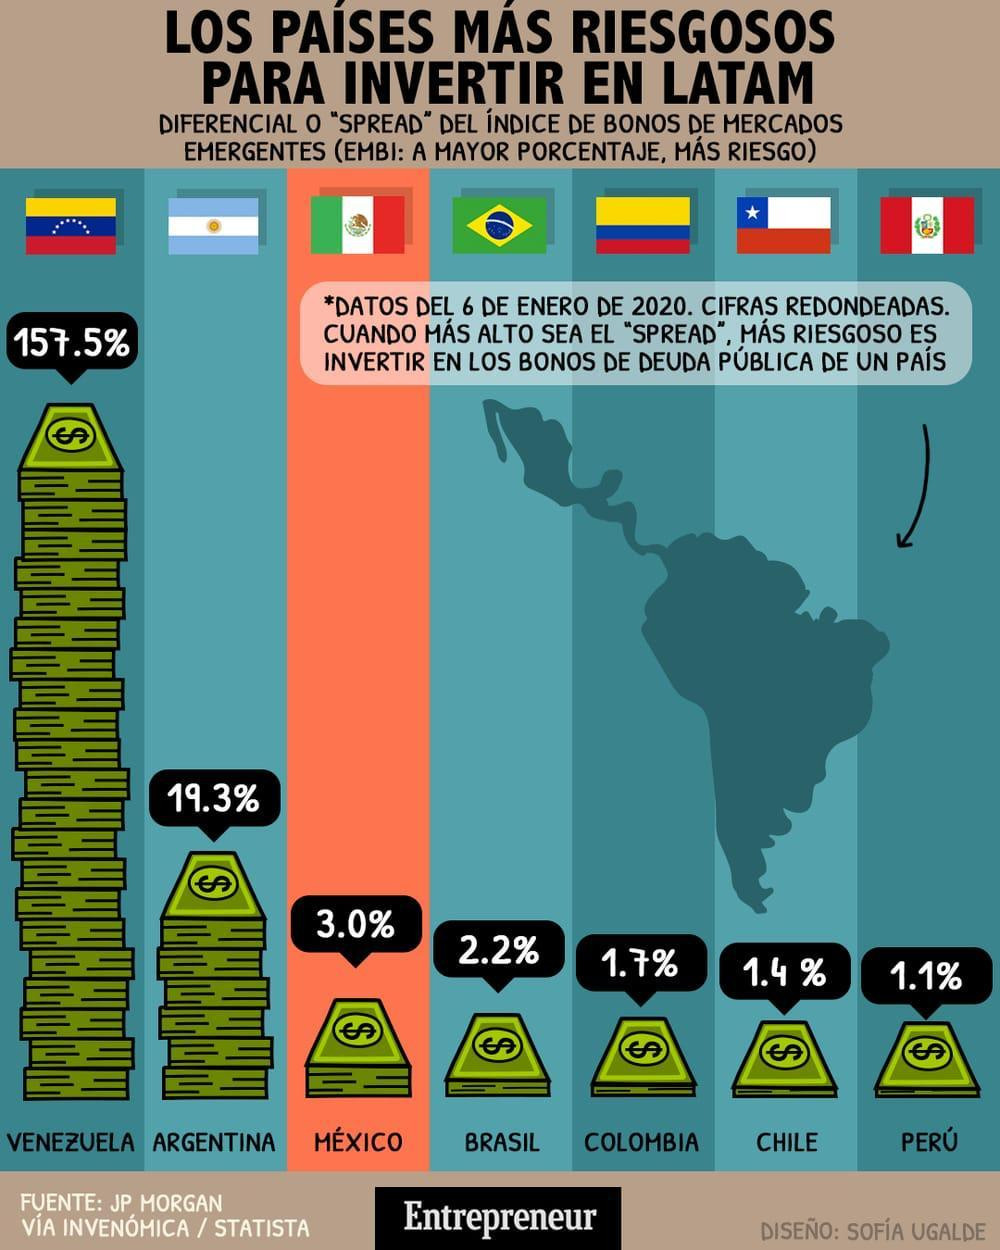 Los países con más riesgo de invertir en Latinoamerica